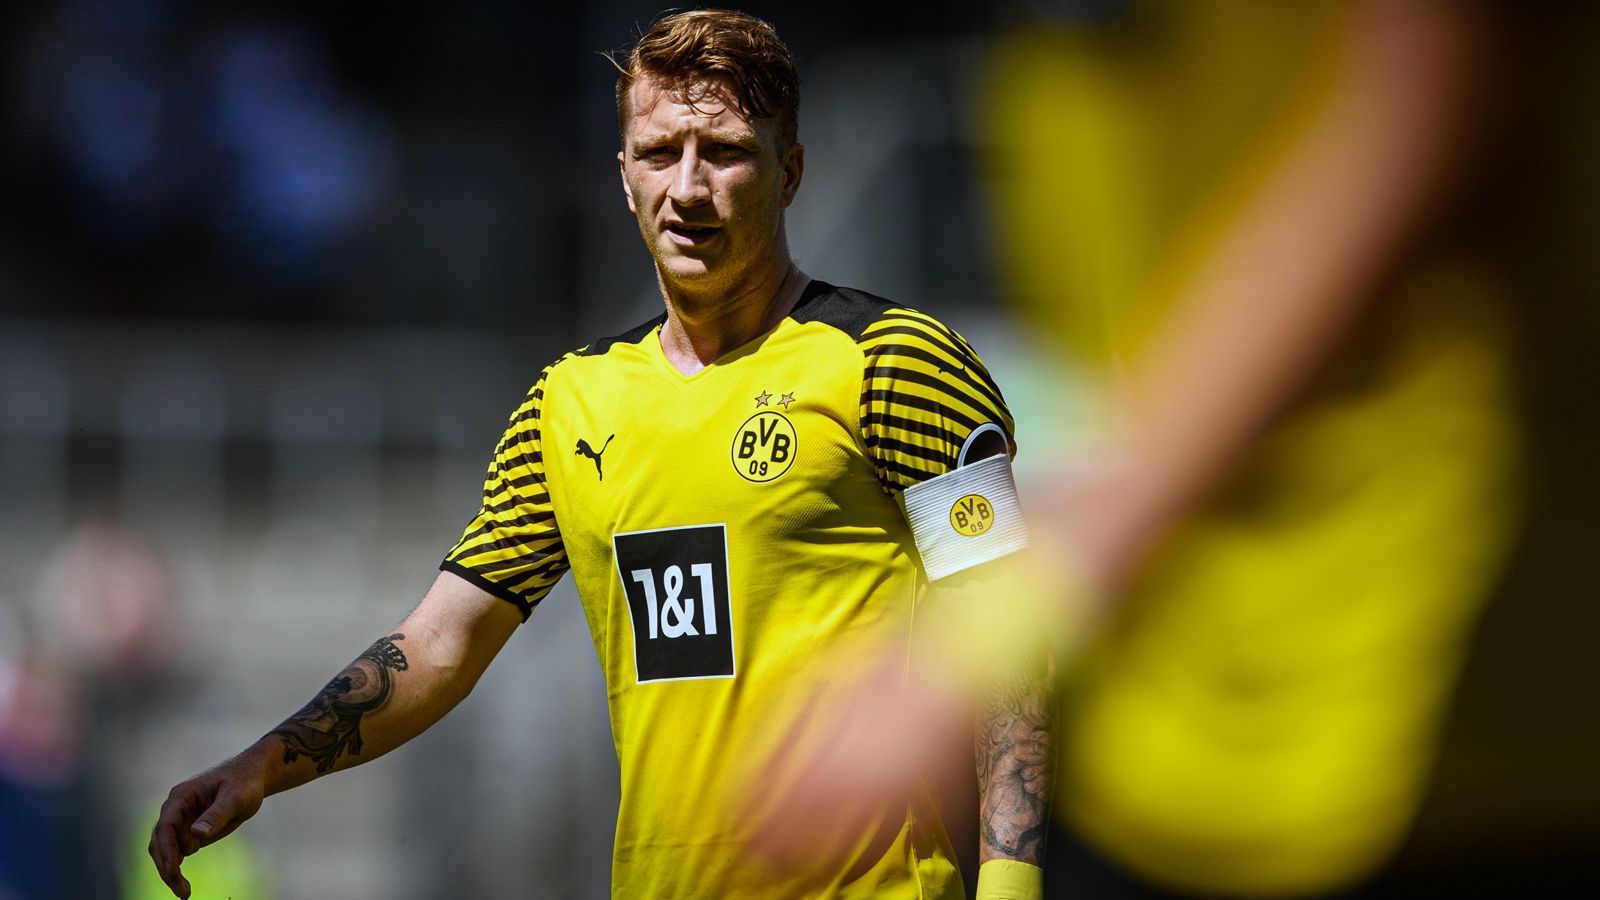 
                <strong>Borussia Dortmund: Marco Reus</strong><br>
                Auch nach dem Trainerwechsel hin zu Marco Rose bleibt beim BVB Routinier Marco Reus der Kapitän bei den Dortmundern. Der Offensivmann, der zuletzt freiwillig auf eine EM-Teilnahme verzichtete, hat das Kapitänsamt beim BVB bereits seit 2018 inne.
              